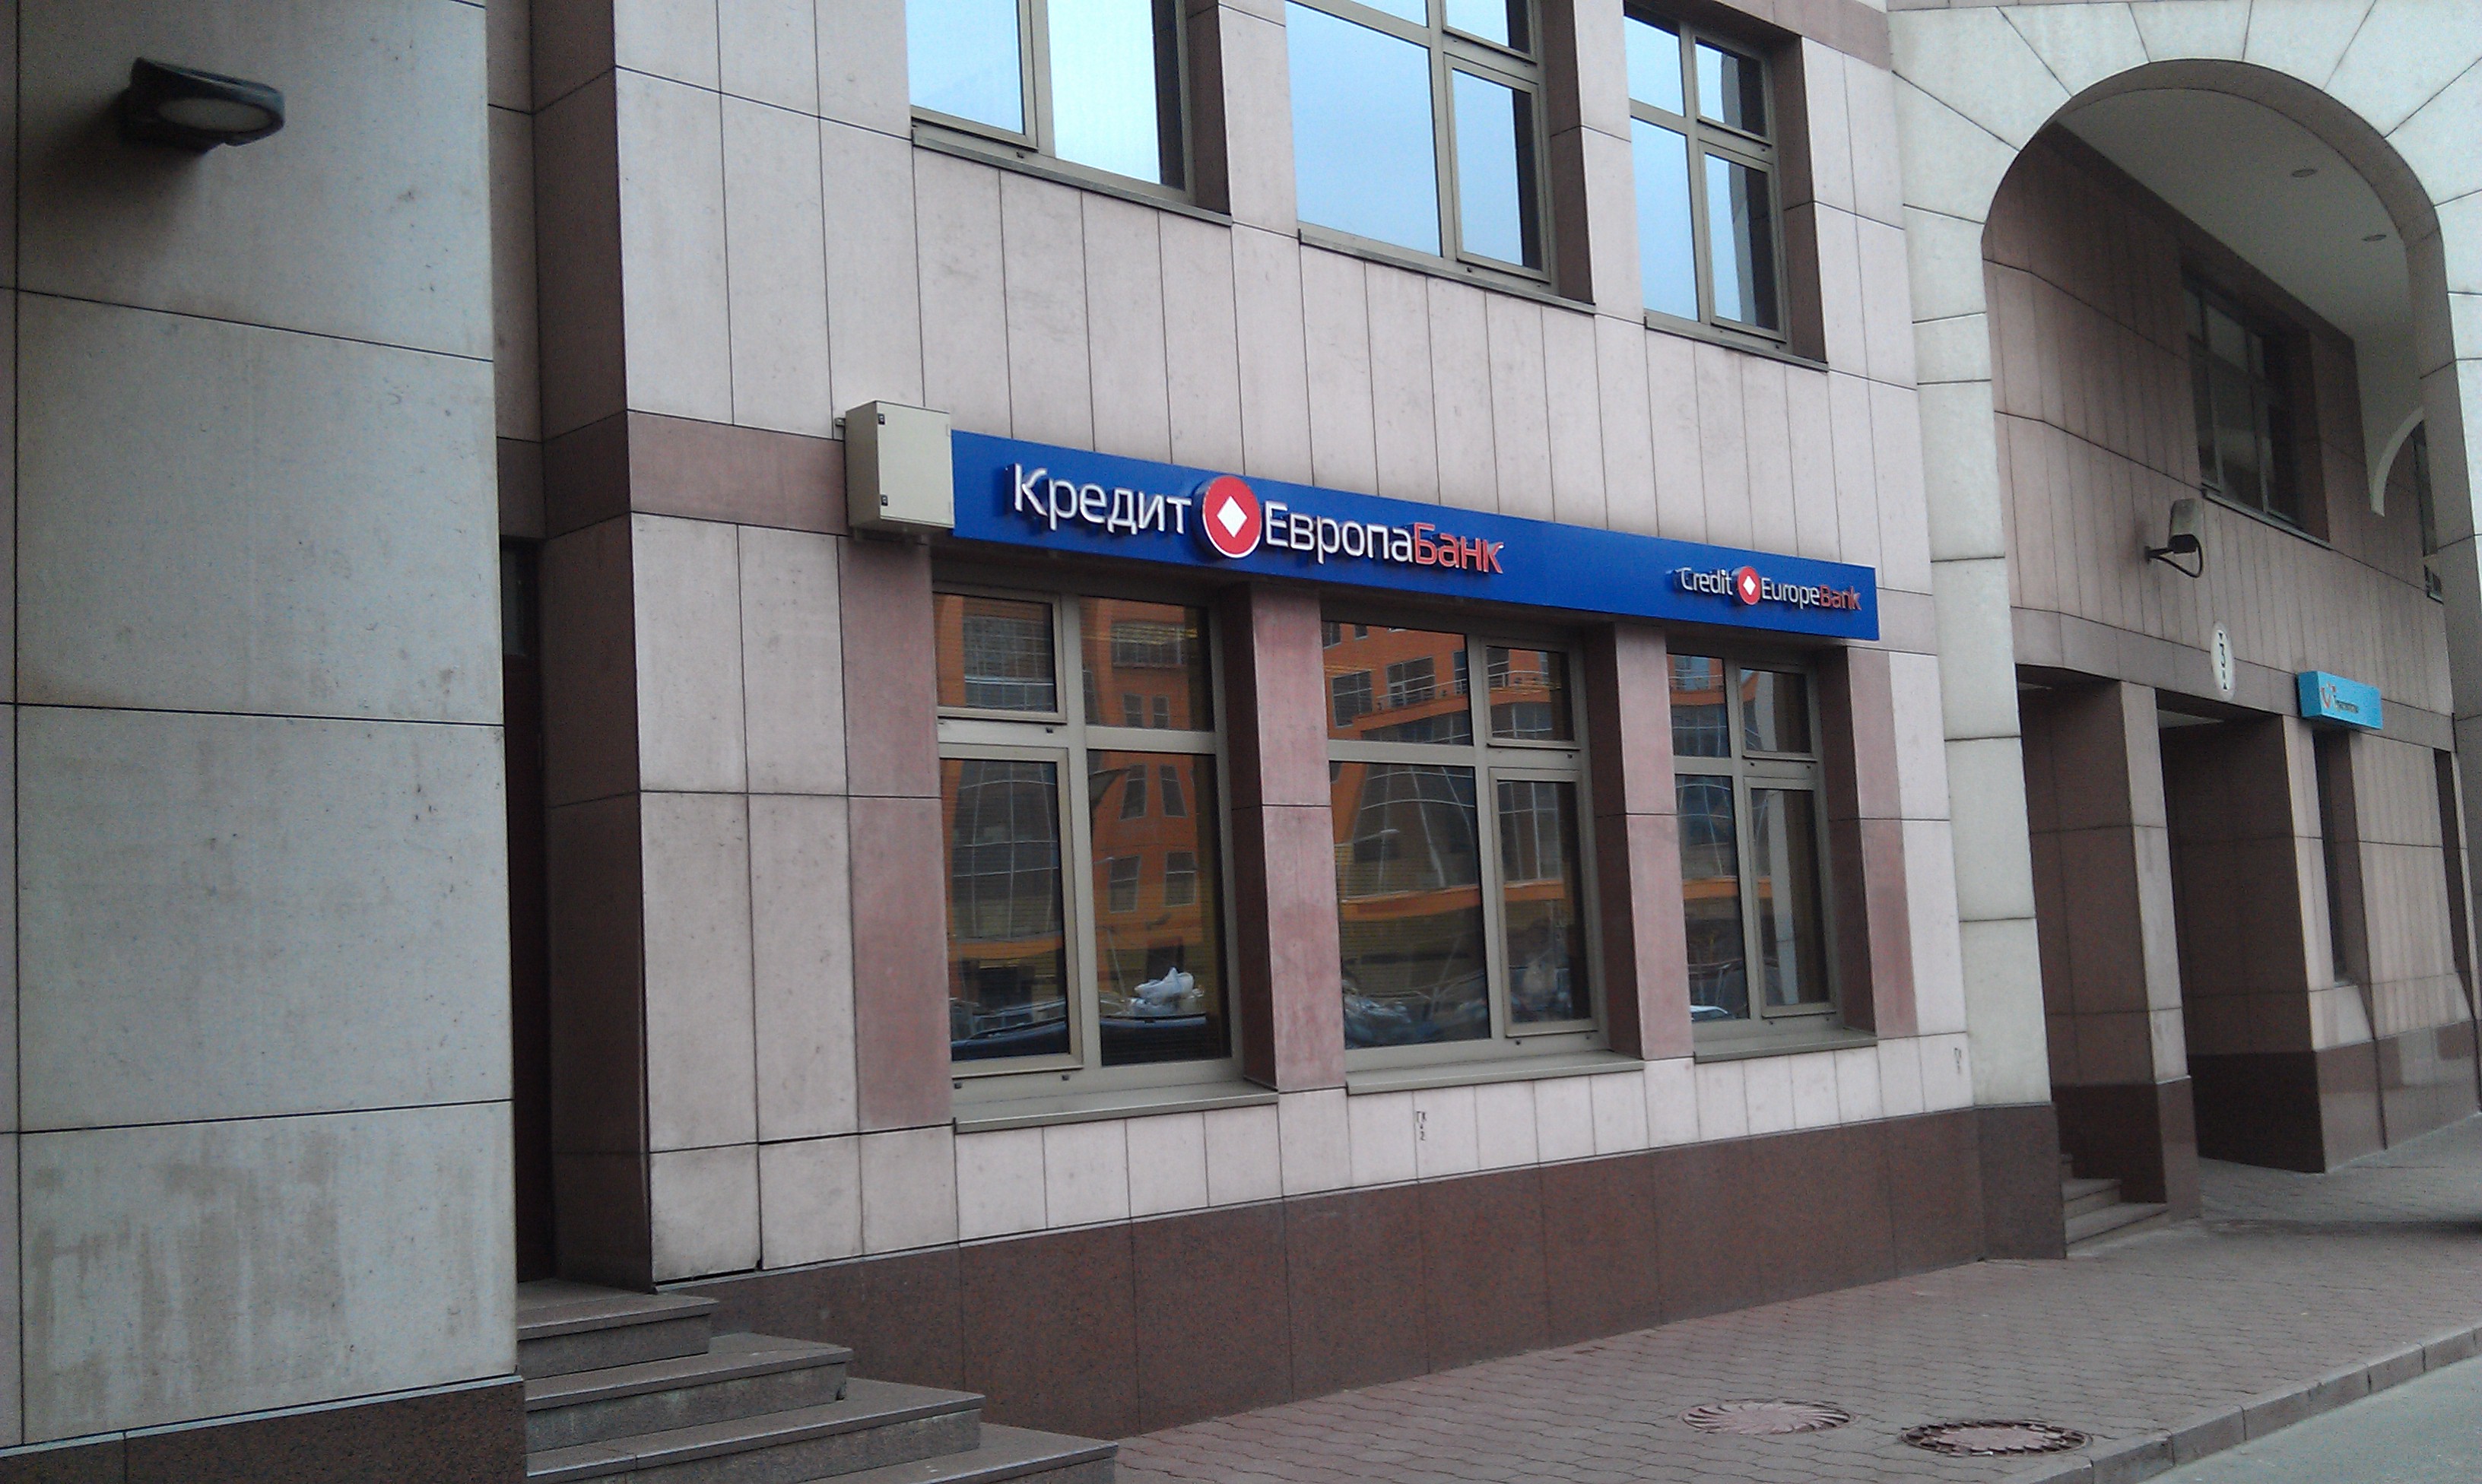 Кредитные банки новосибирска. Европа банк. Банк Новосибирск. Кредит Европа банк фото. Отделение банка кредит Европа.